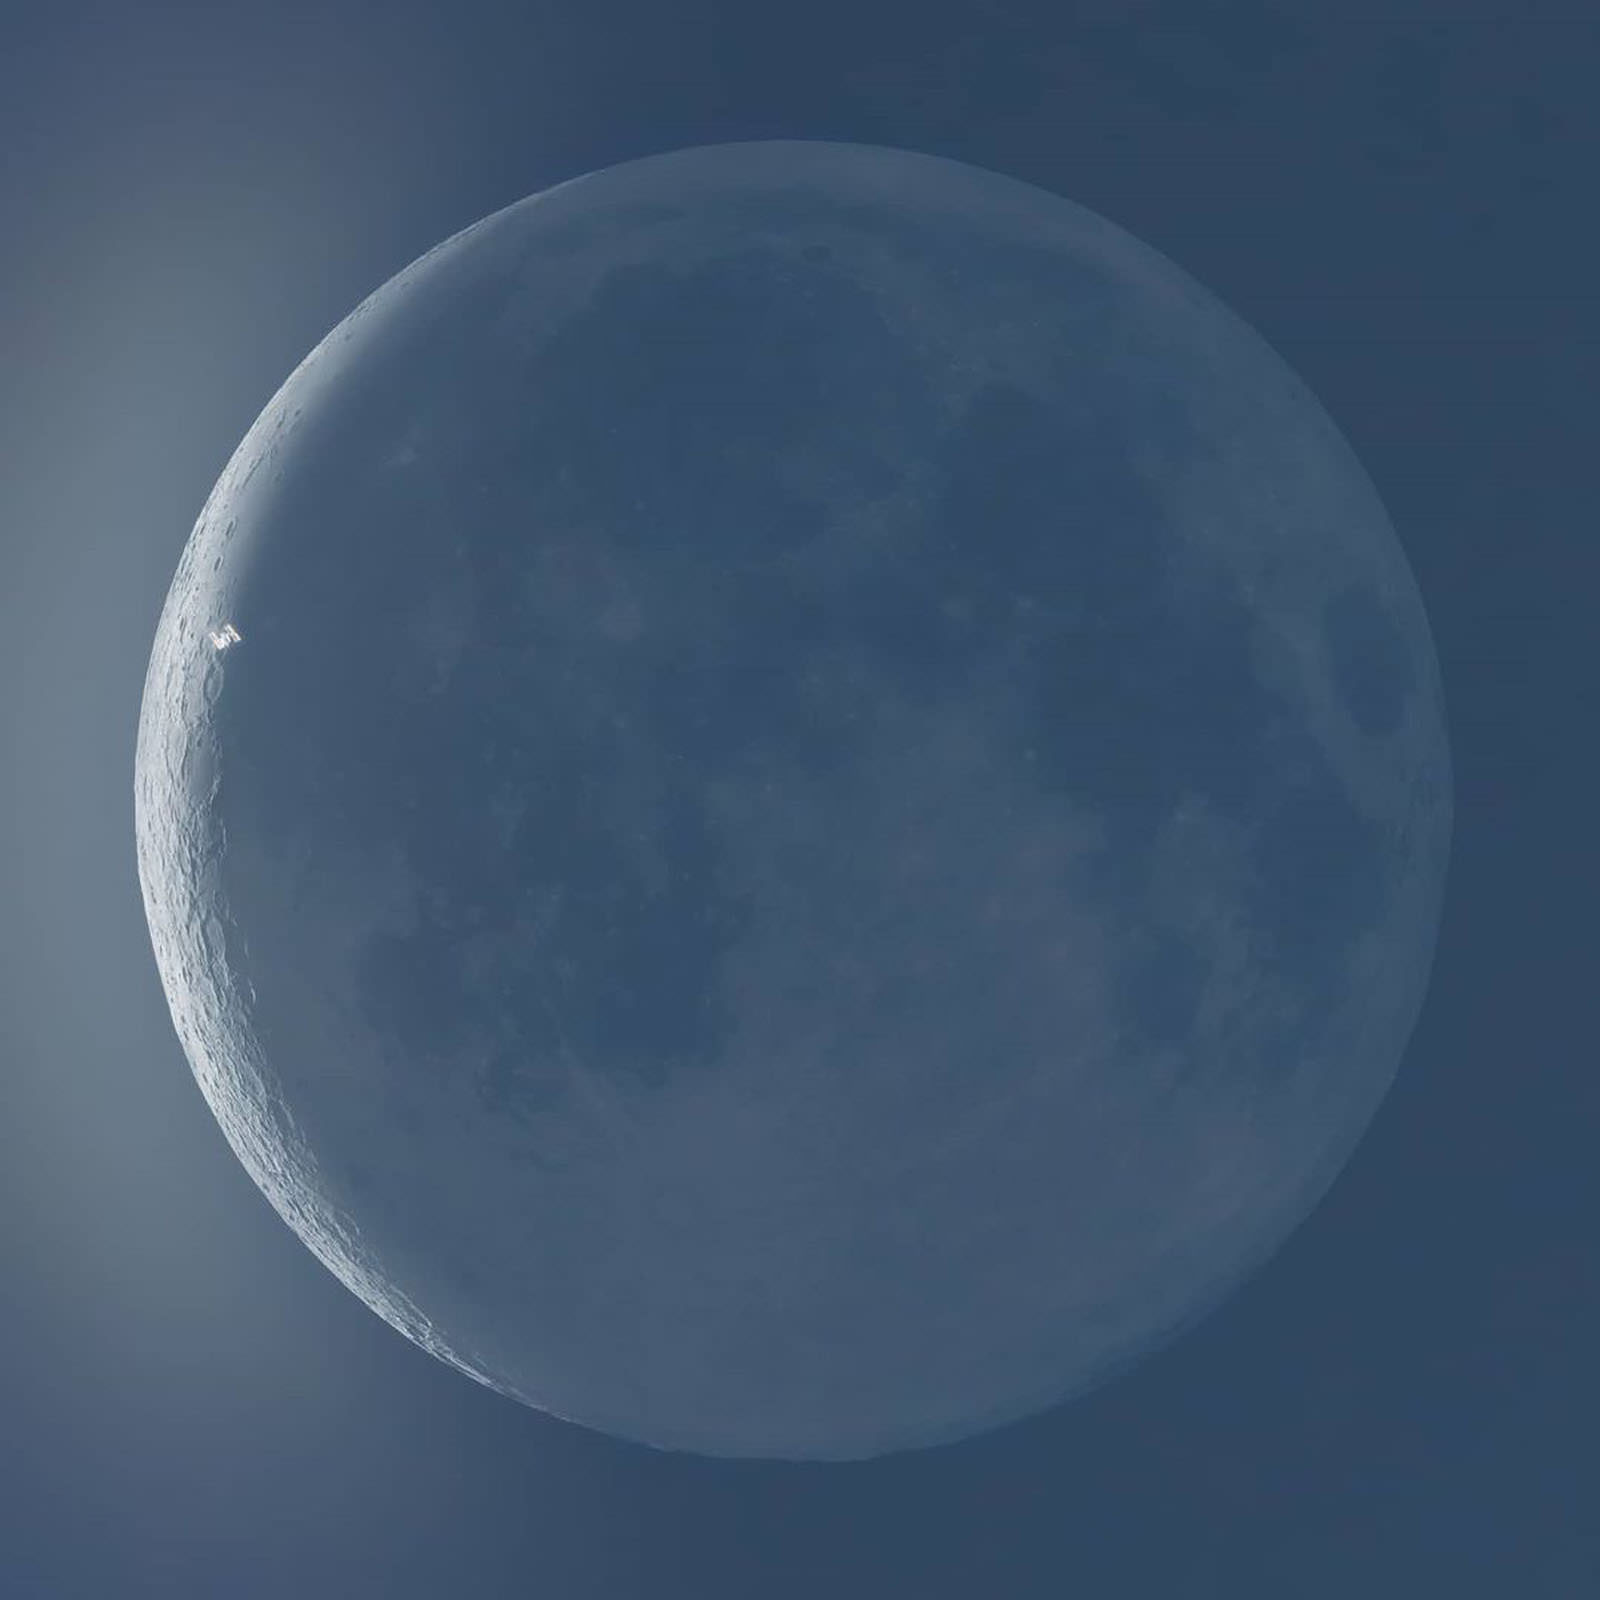 Hình ảnh khoảnh khắc Trạm Không gian Quốc tế bay qua Mặt Trăng và Mặt Trời